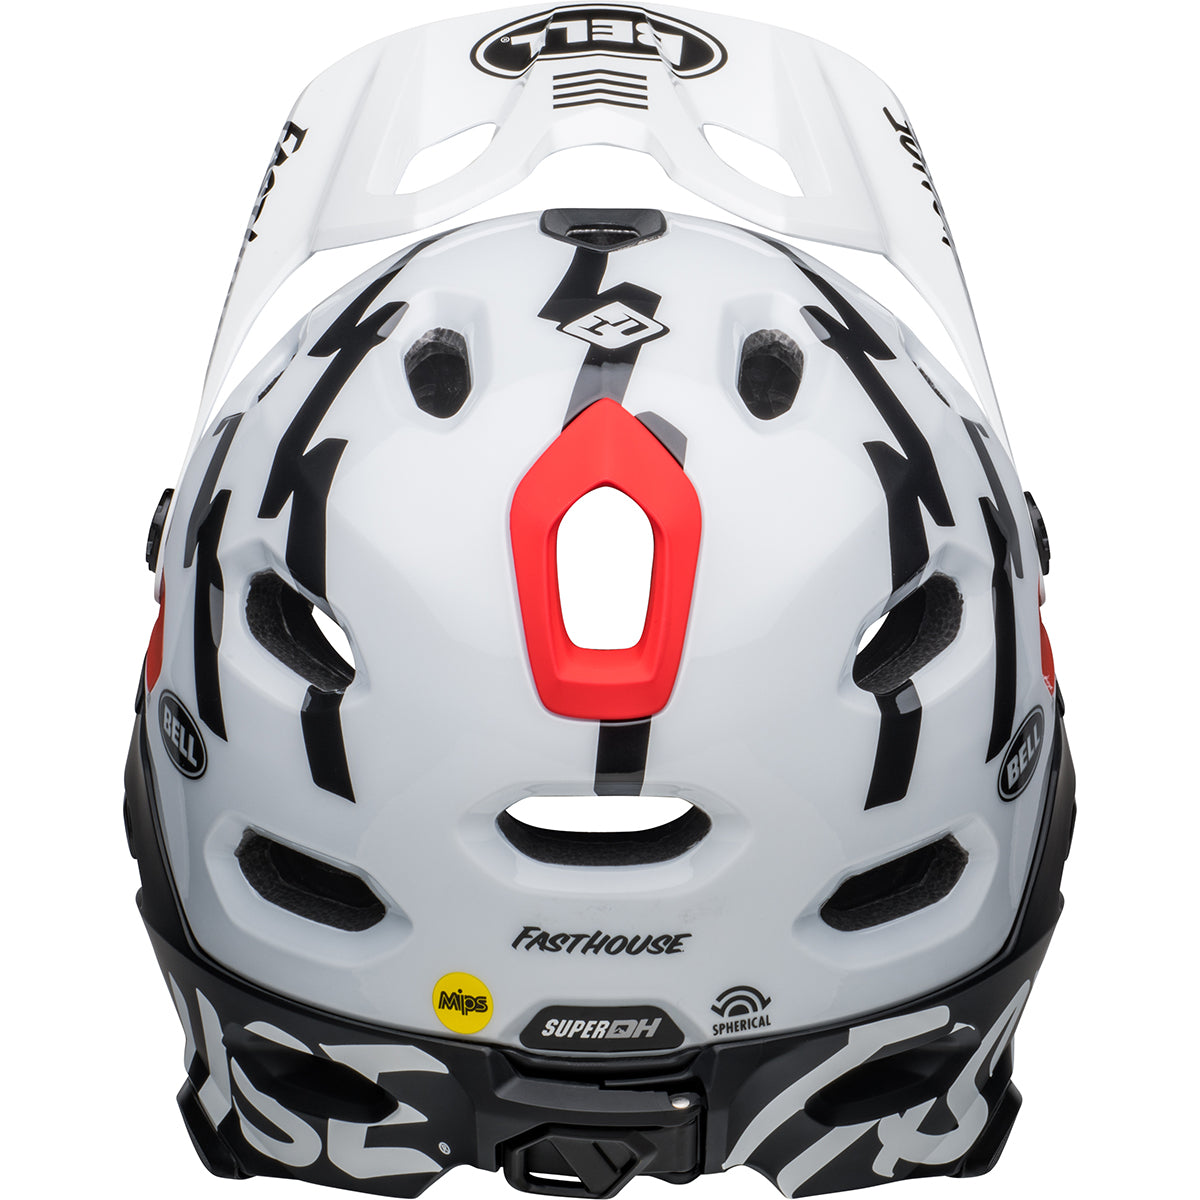 Bell Super DH Spherical MTB Helmet - Black/White